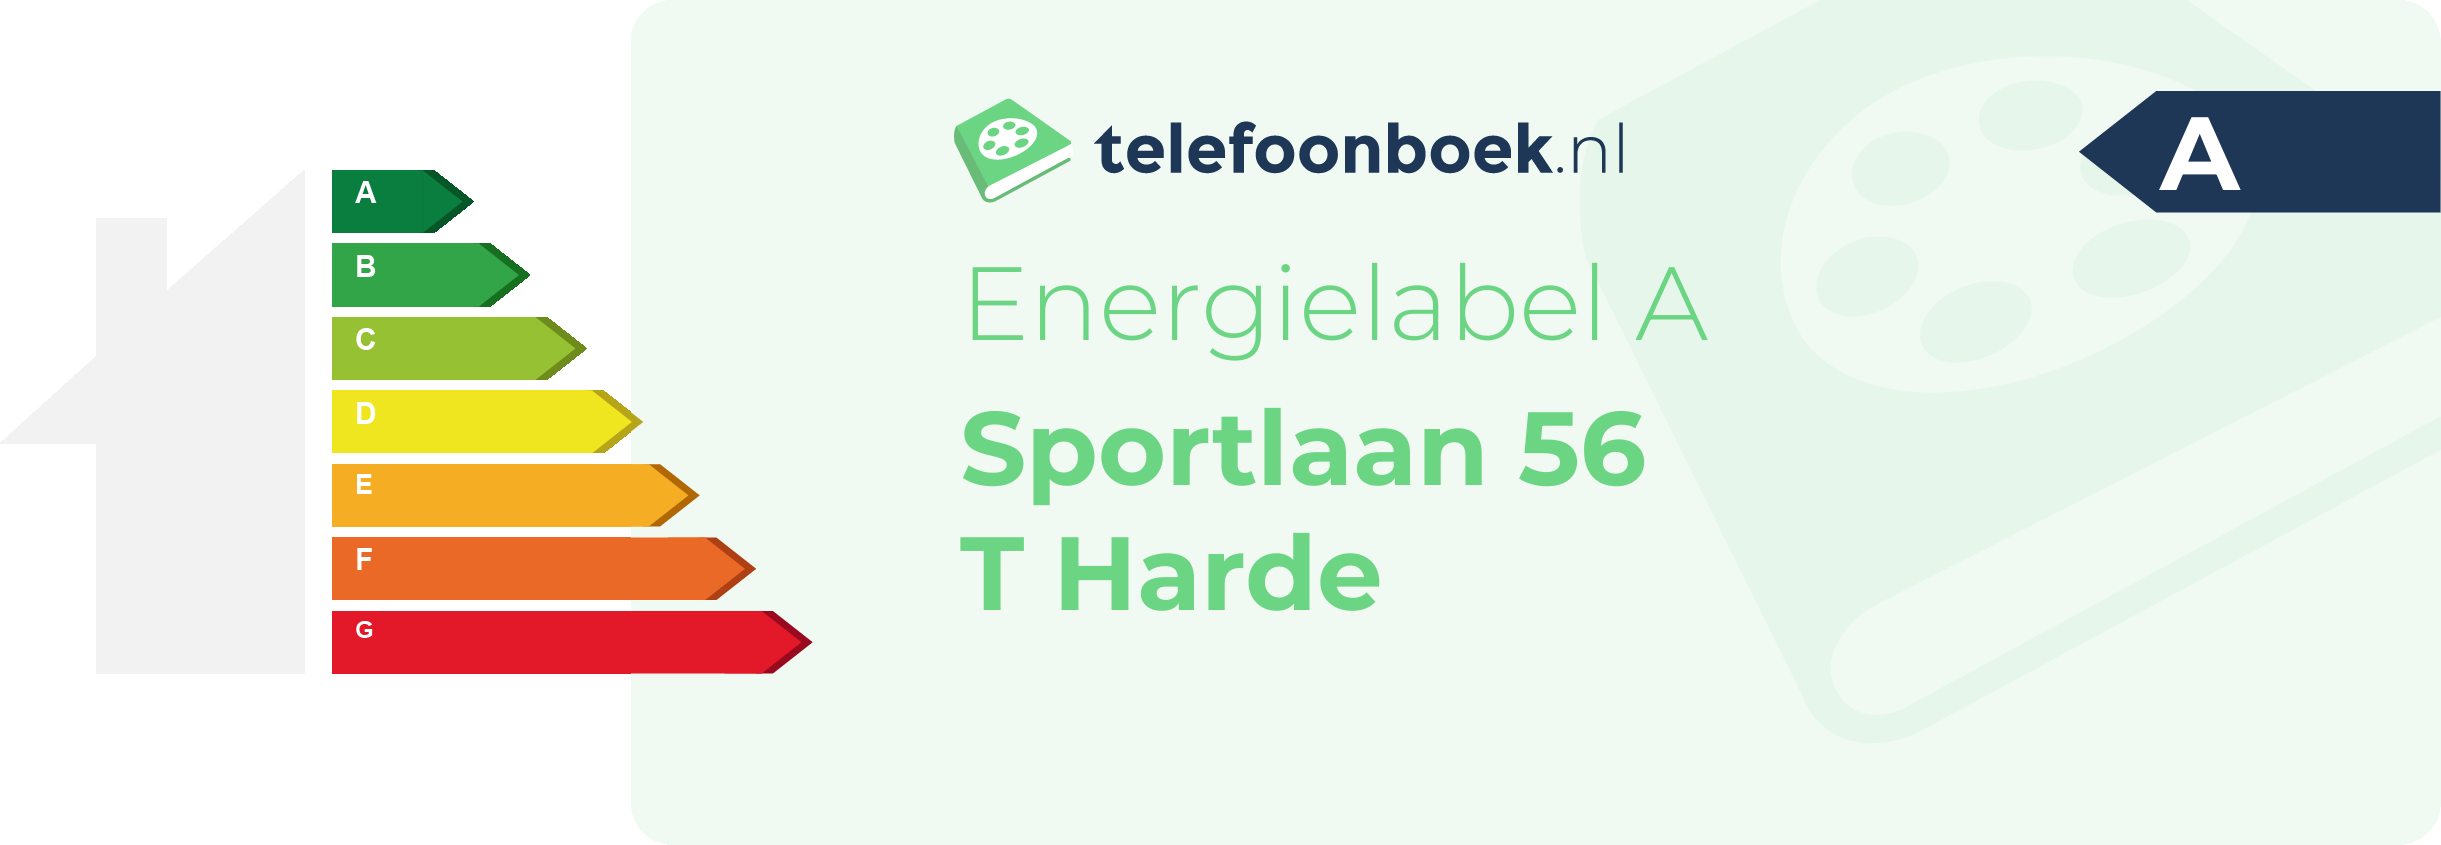 Energielabel Sportlaan 56 T Harde